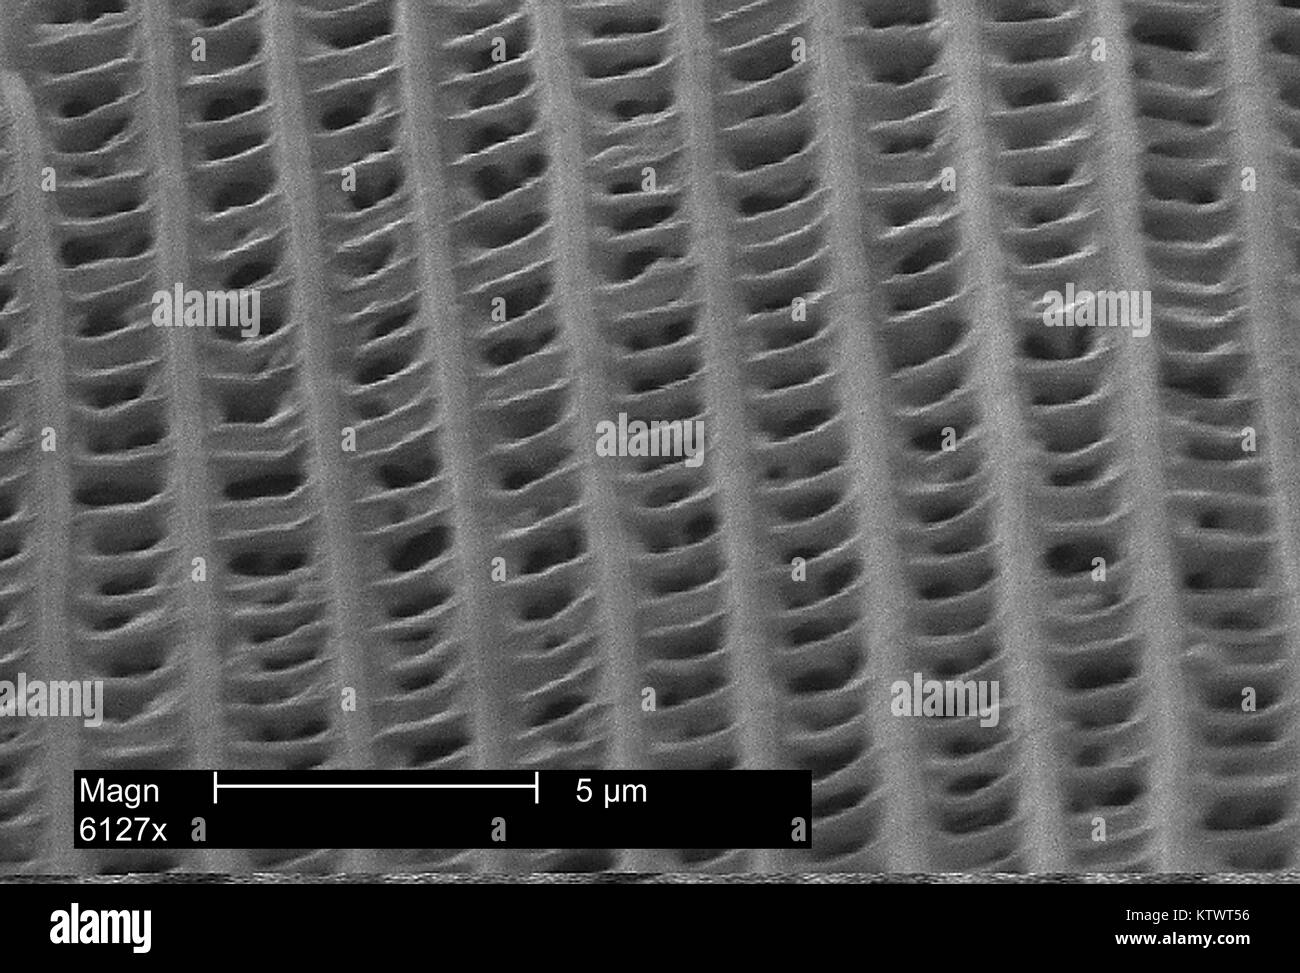 Questo scanning electron microfotografia (SEM) raffigura il puntone-come la costruzione di una singola scala da un'ala di farfalla, ingrandite 6127X. Nota i puntoni e le perforazioni della scala individuale. Questo aiuta a promuovere maggiore ascensore aerodinamico durante l'insetto di volo, nonché di ridurre il peso del meccanismo di ala. Immagine cortesia CDC, 2002. Foto Stock